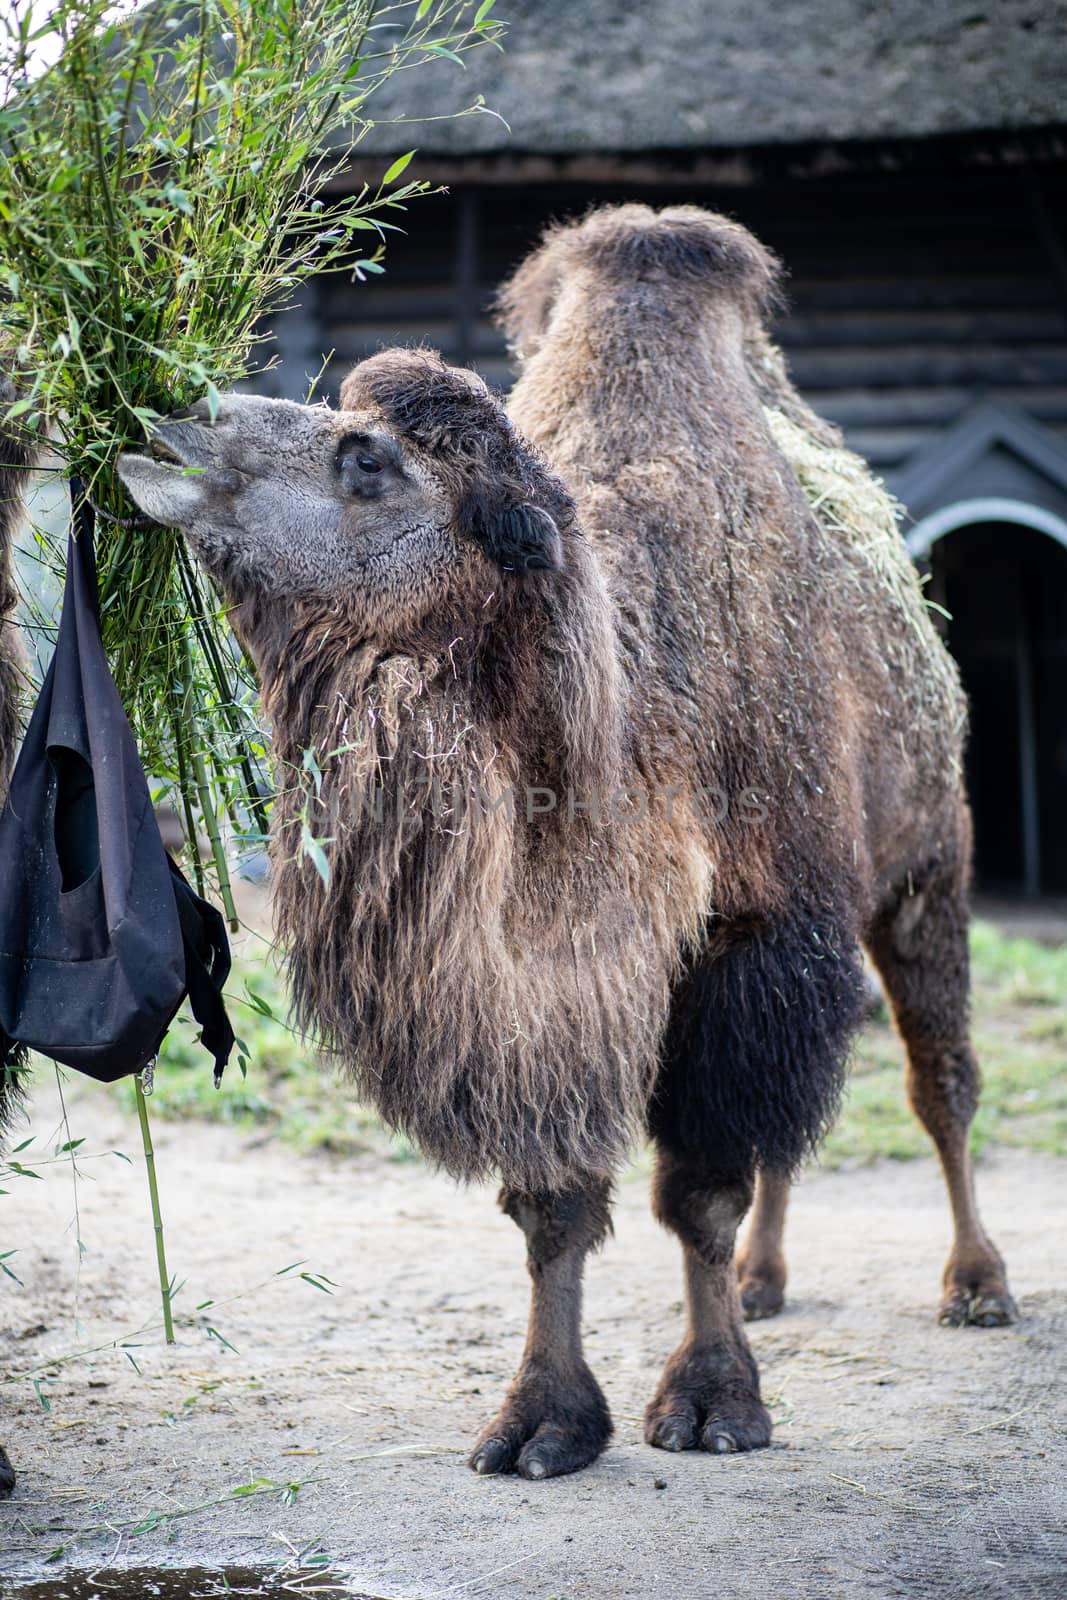 Camel in Copenhagen Zoo by oliverfoerstner